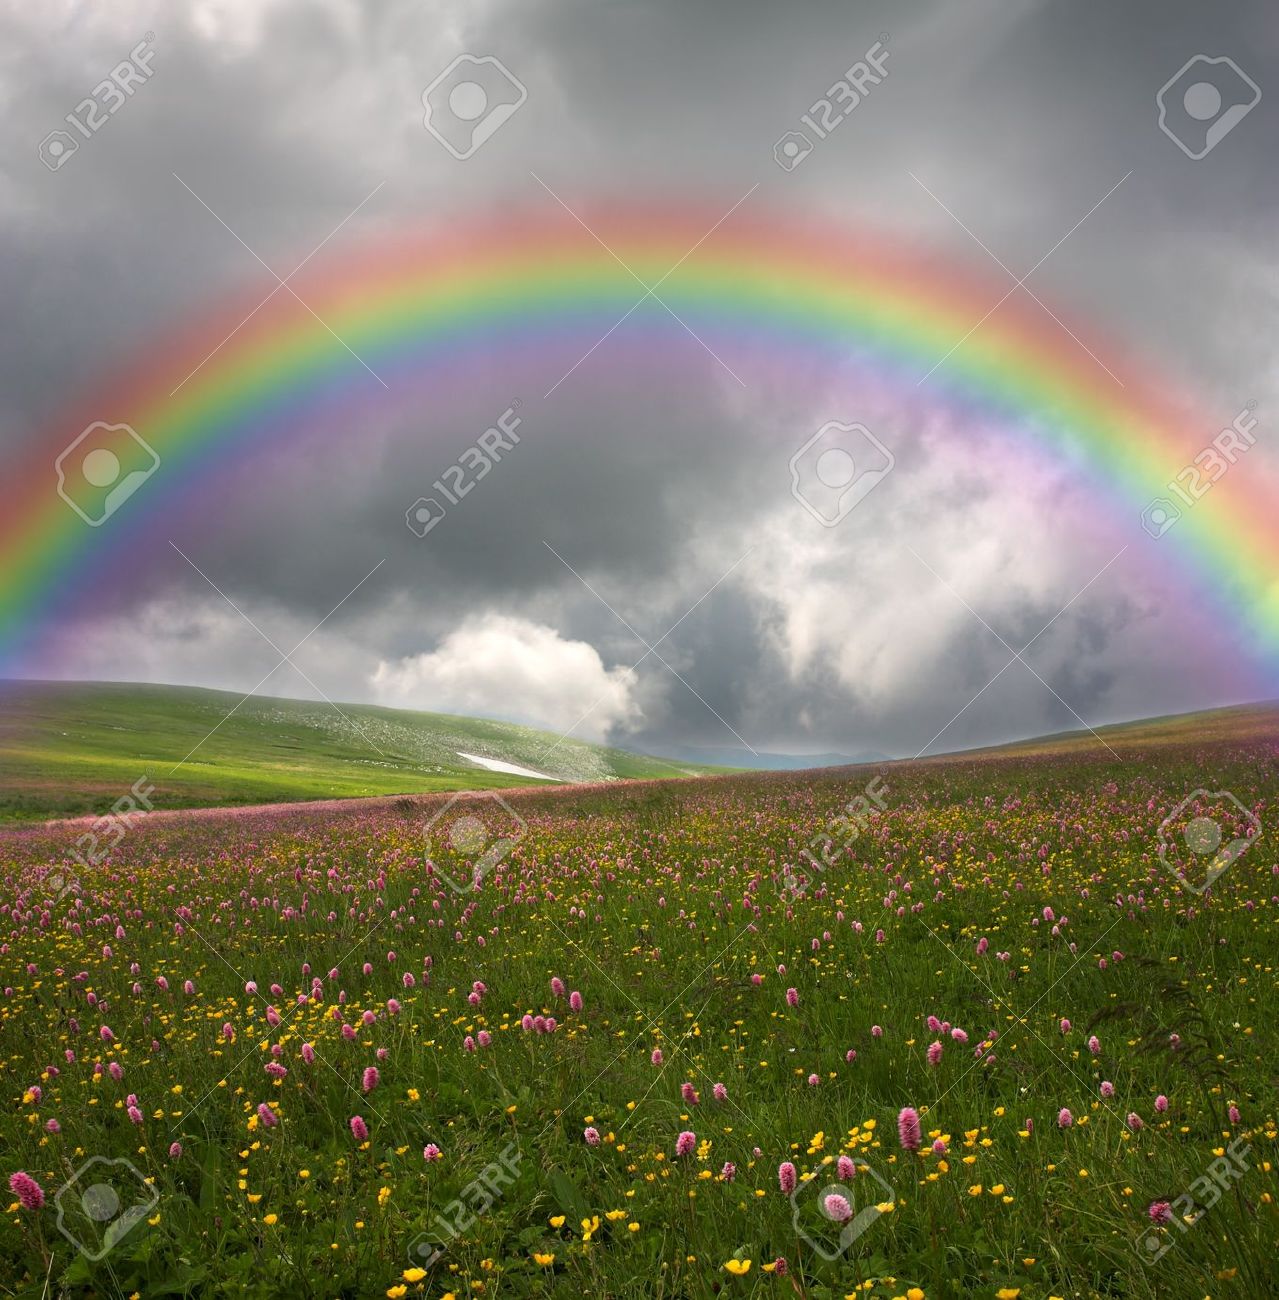 8207773-Regenbogen-auf-dunklen-Himmel-Hintergrund-Lizenzfreie-Bilder.jpg